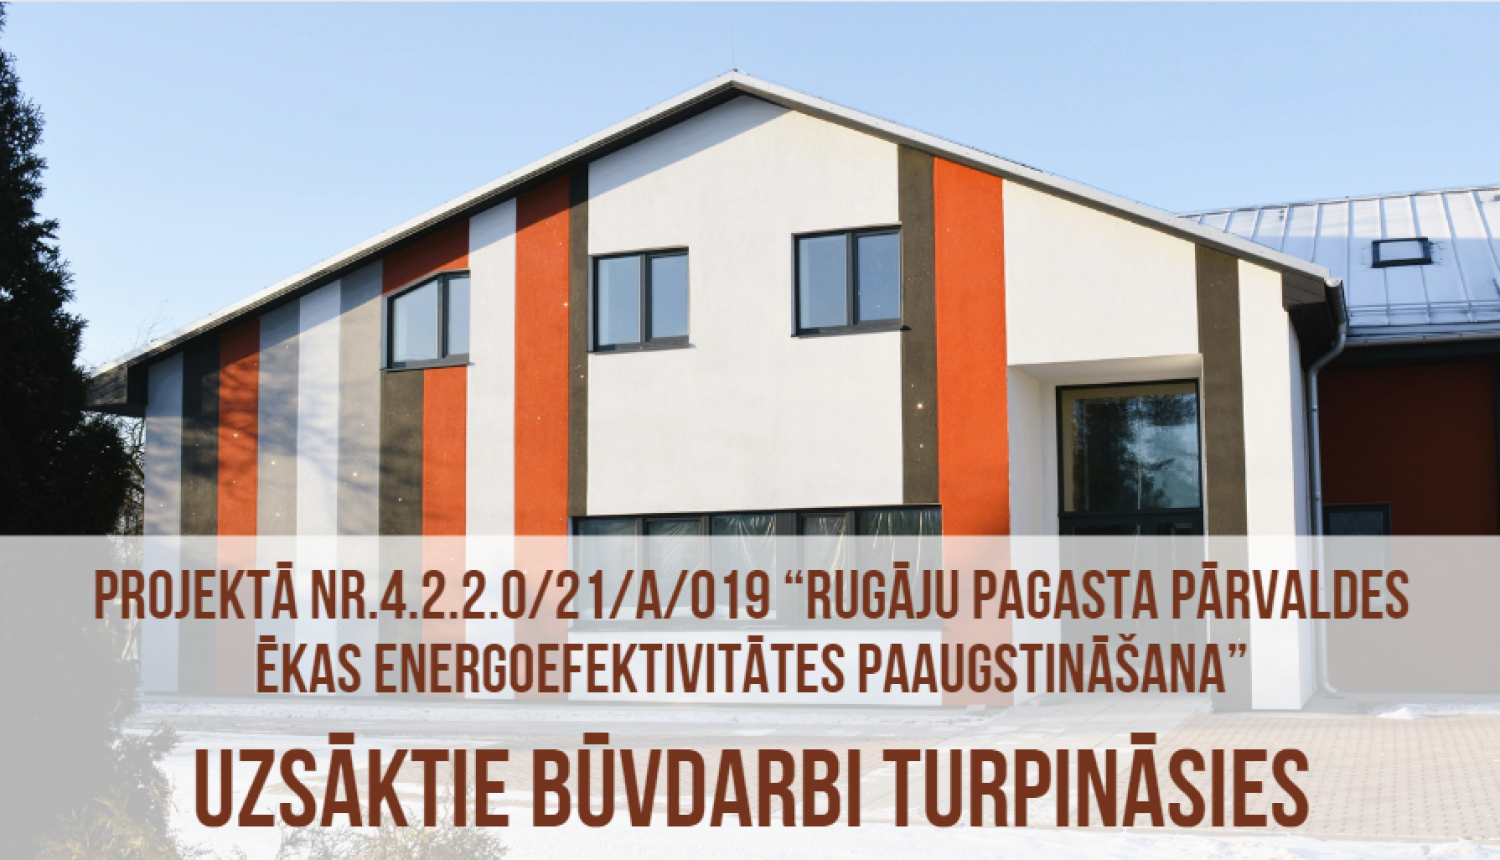 Rugāju pagasta pārvaldes ēkas energoefektivitātes paaugstināšanas būvdarbi turpināsies